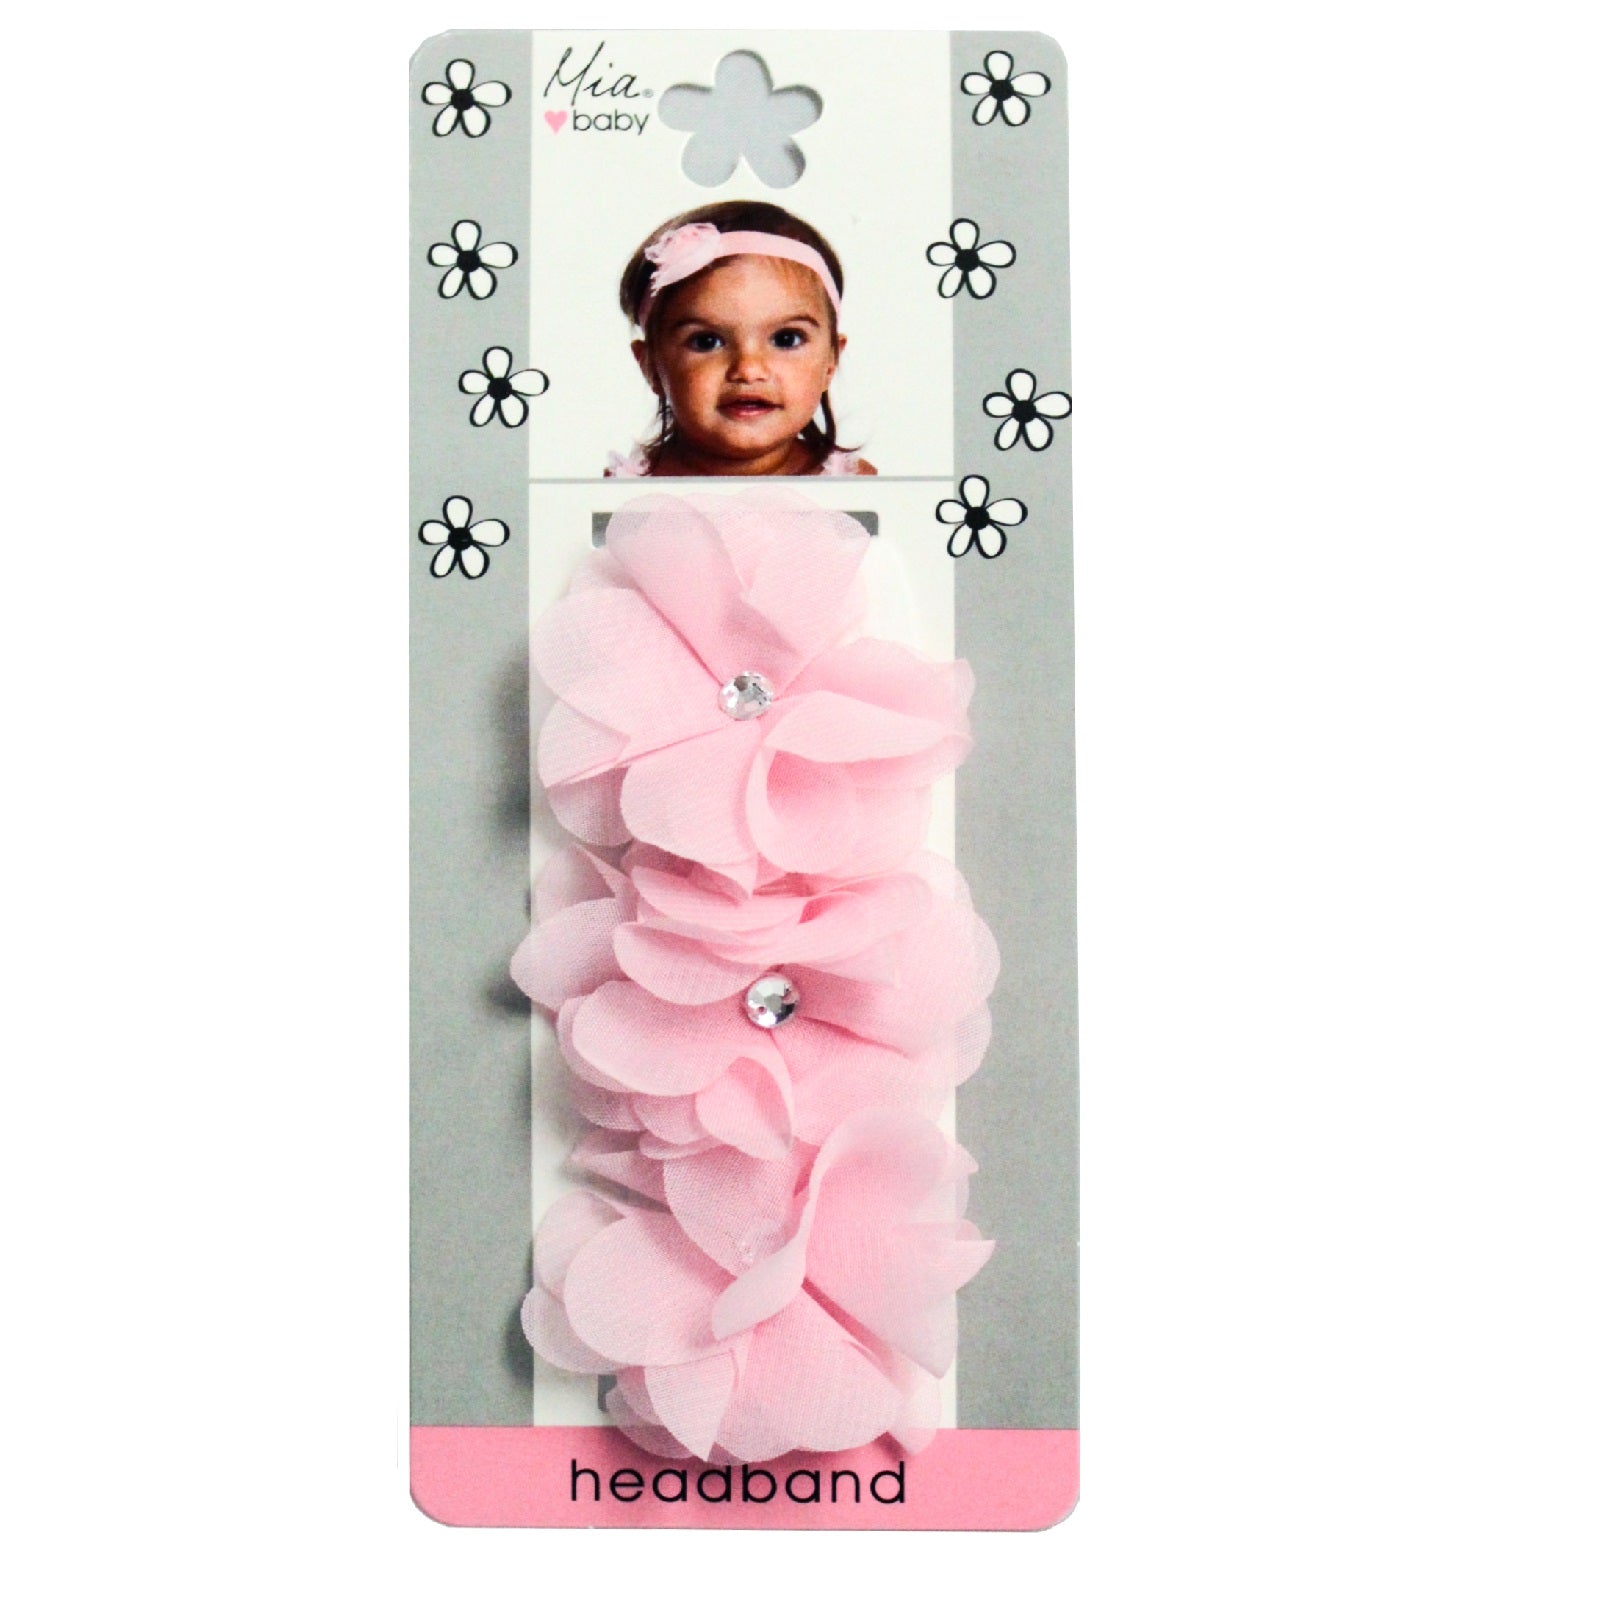 Mia® Baby Chiffon Flower Headband - light pink headband and light pink flowers - shown on packaging - invented by #MiaKaminski #MiaBeauty #Mia #Beauty #Baby #hair #hairaccessories #hairclips #hairbarrettes #love #life #girl #woman